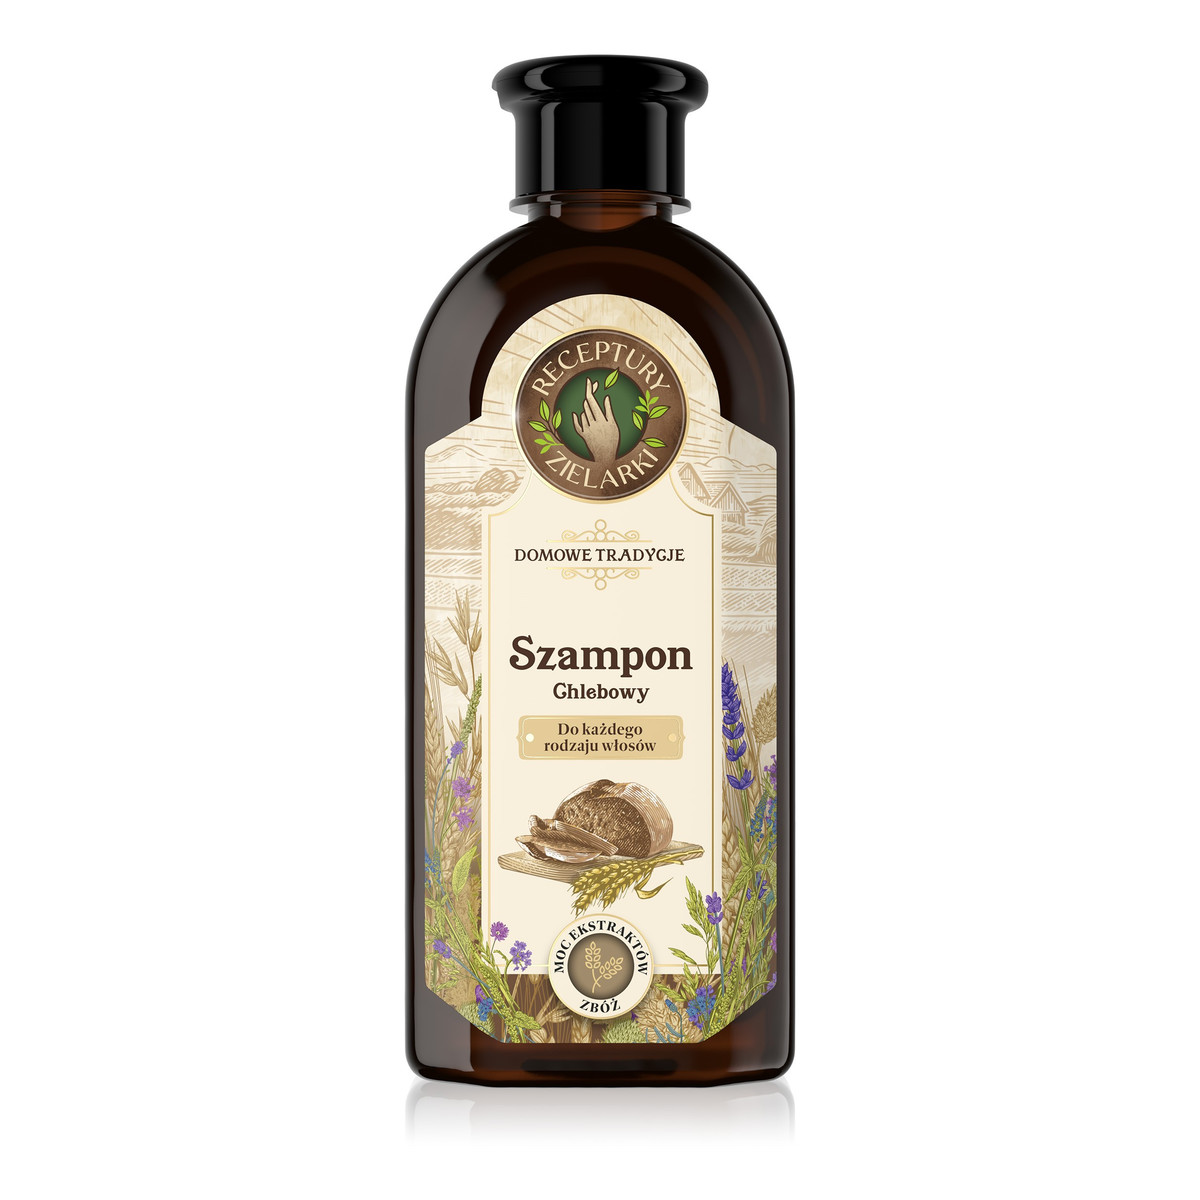 Receptury Zielarki Domowe Tradycje szampon chlebowy do każdego rodzaju włosów 350ml